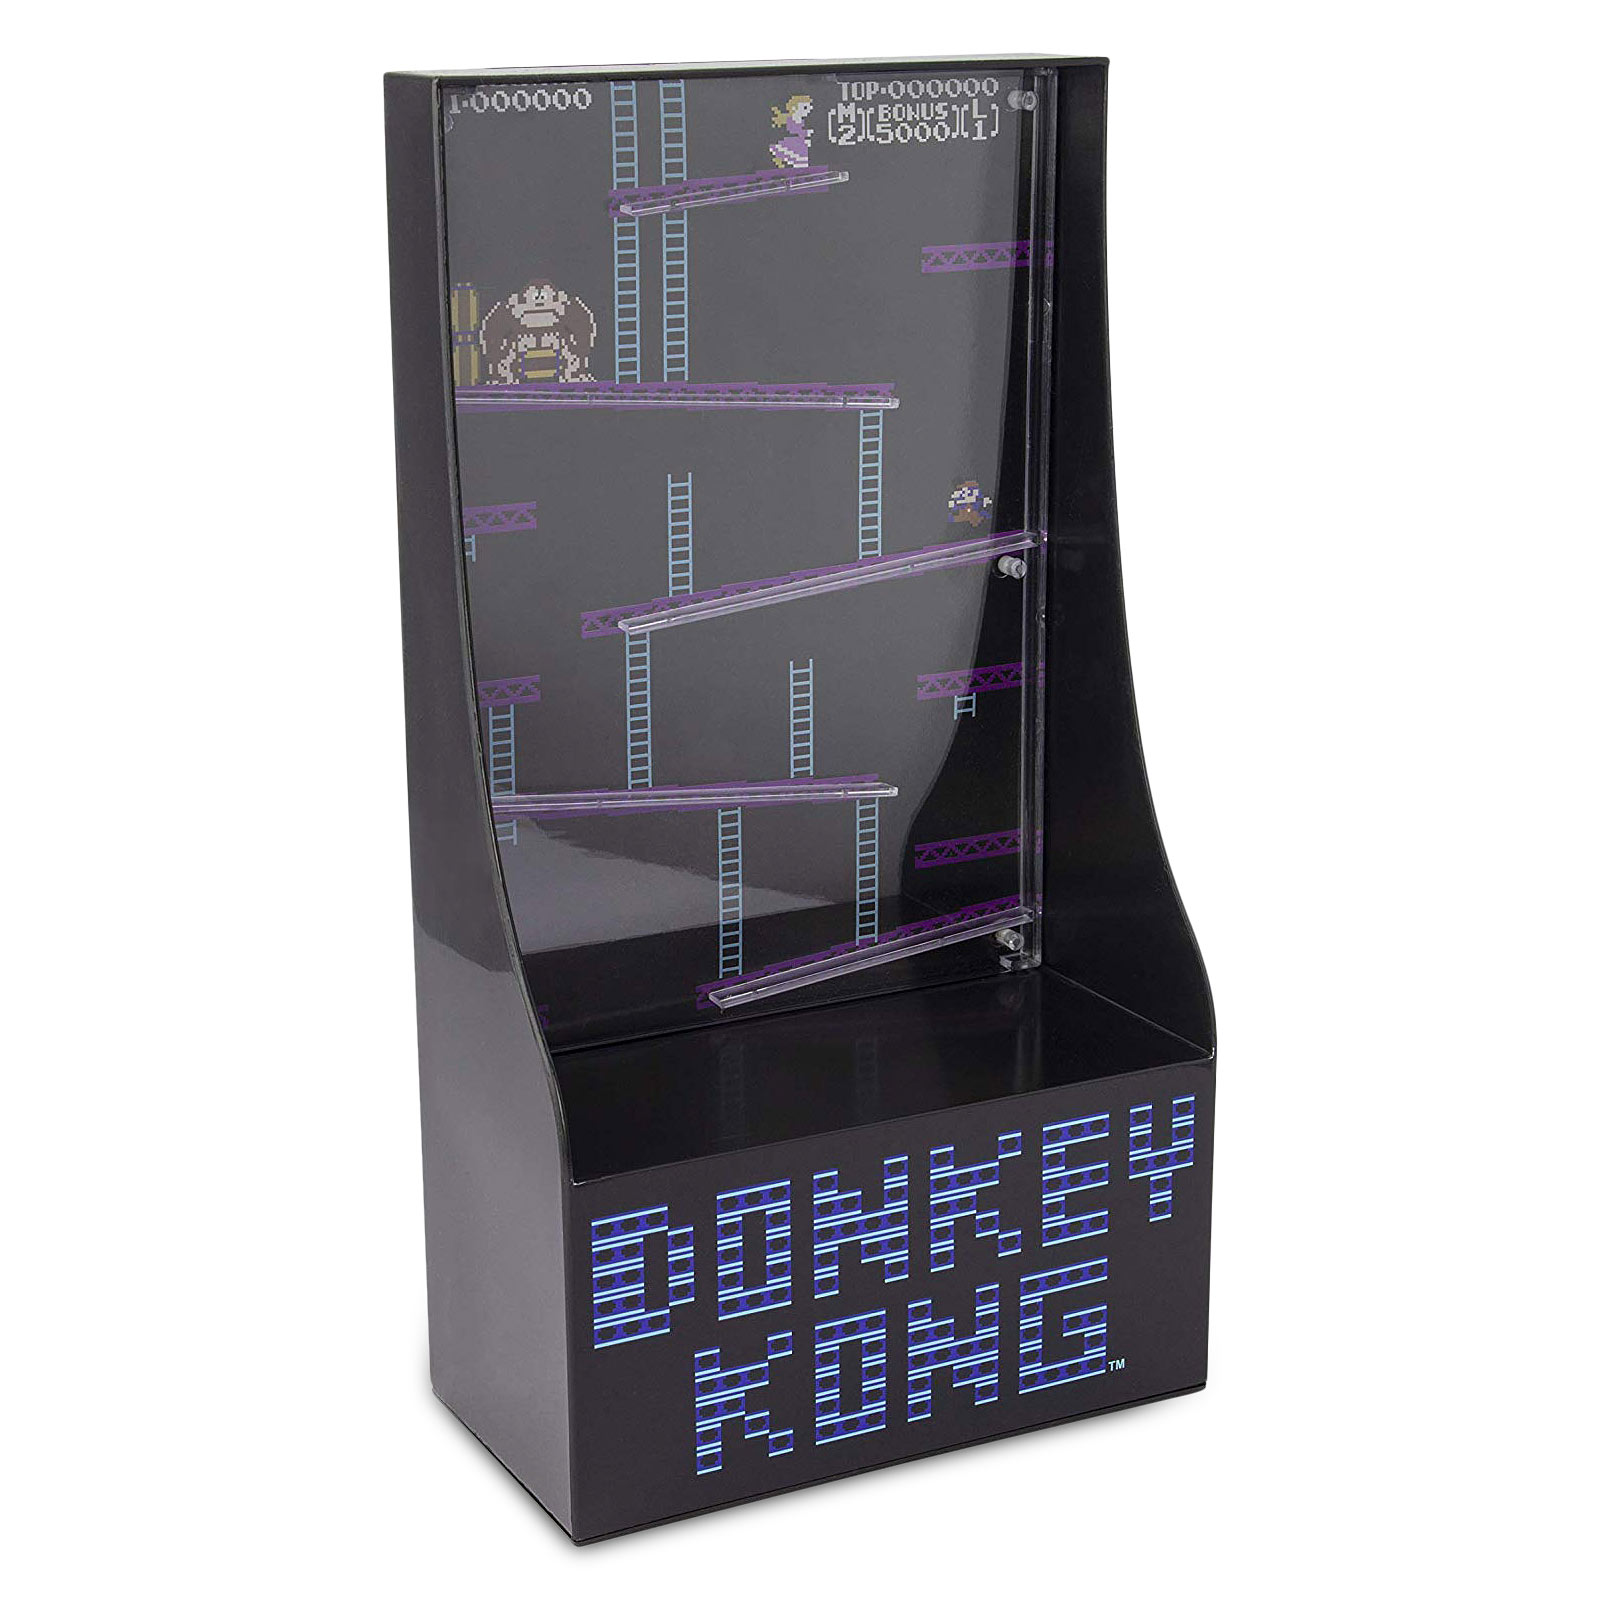 Donkey Kong - Tirelire jeu d'arcade